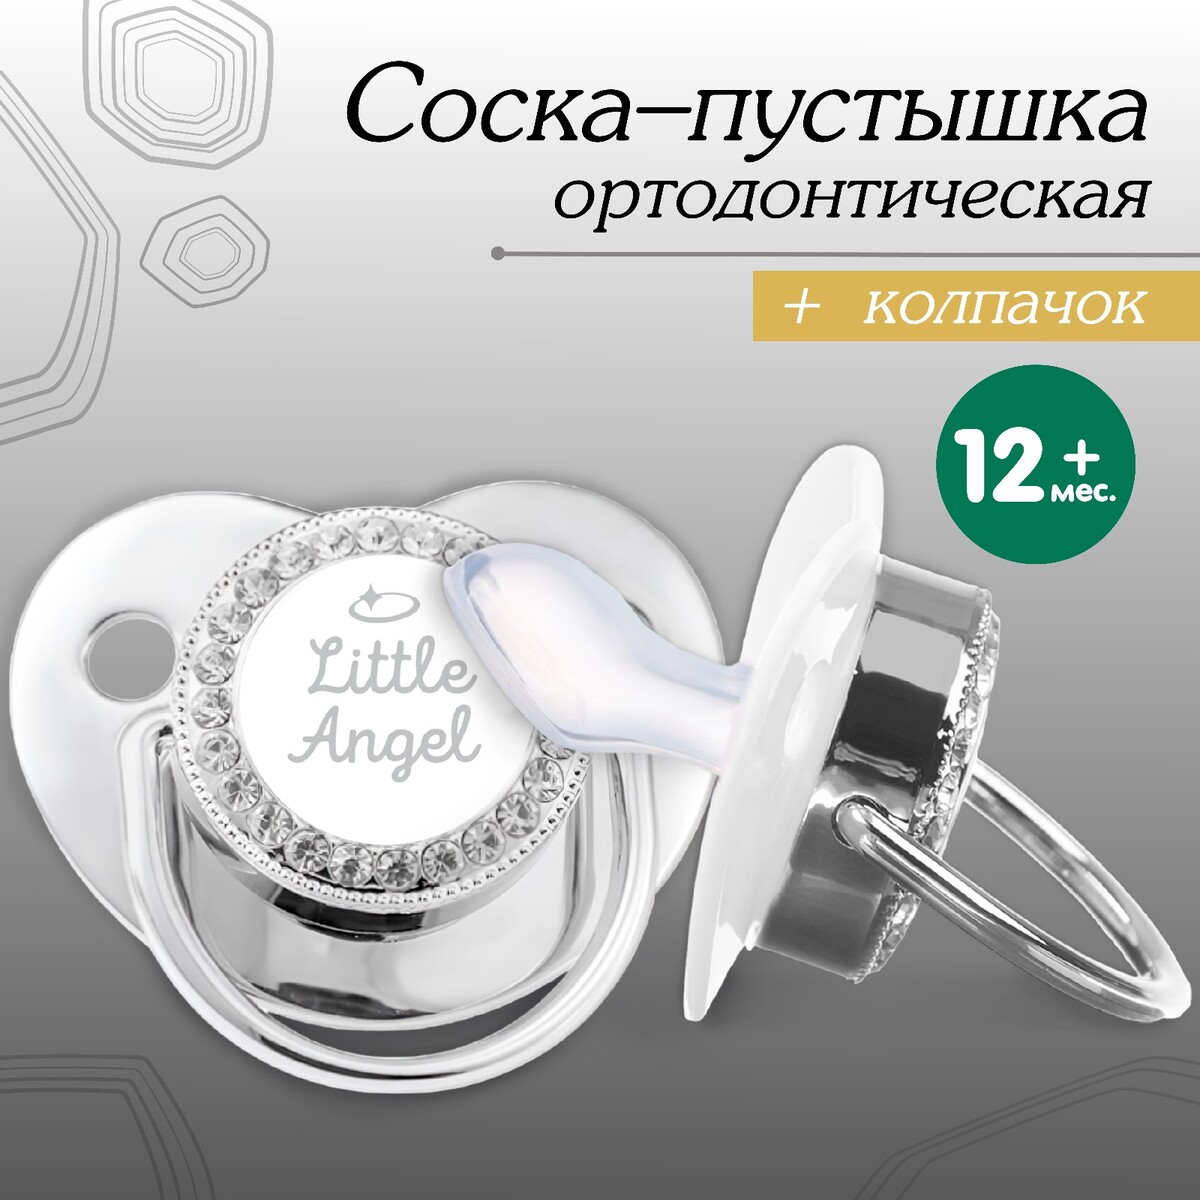 Соска - пустышка ортодонтическая, little angel, с колпачком, +12мес., серебряная, стразы выдра хлоя или серебряная ракушка